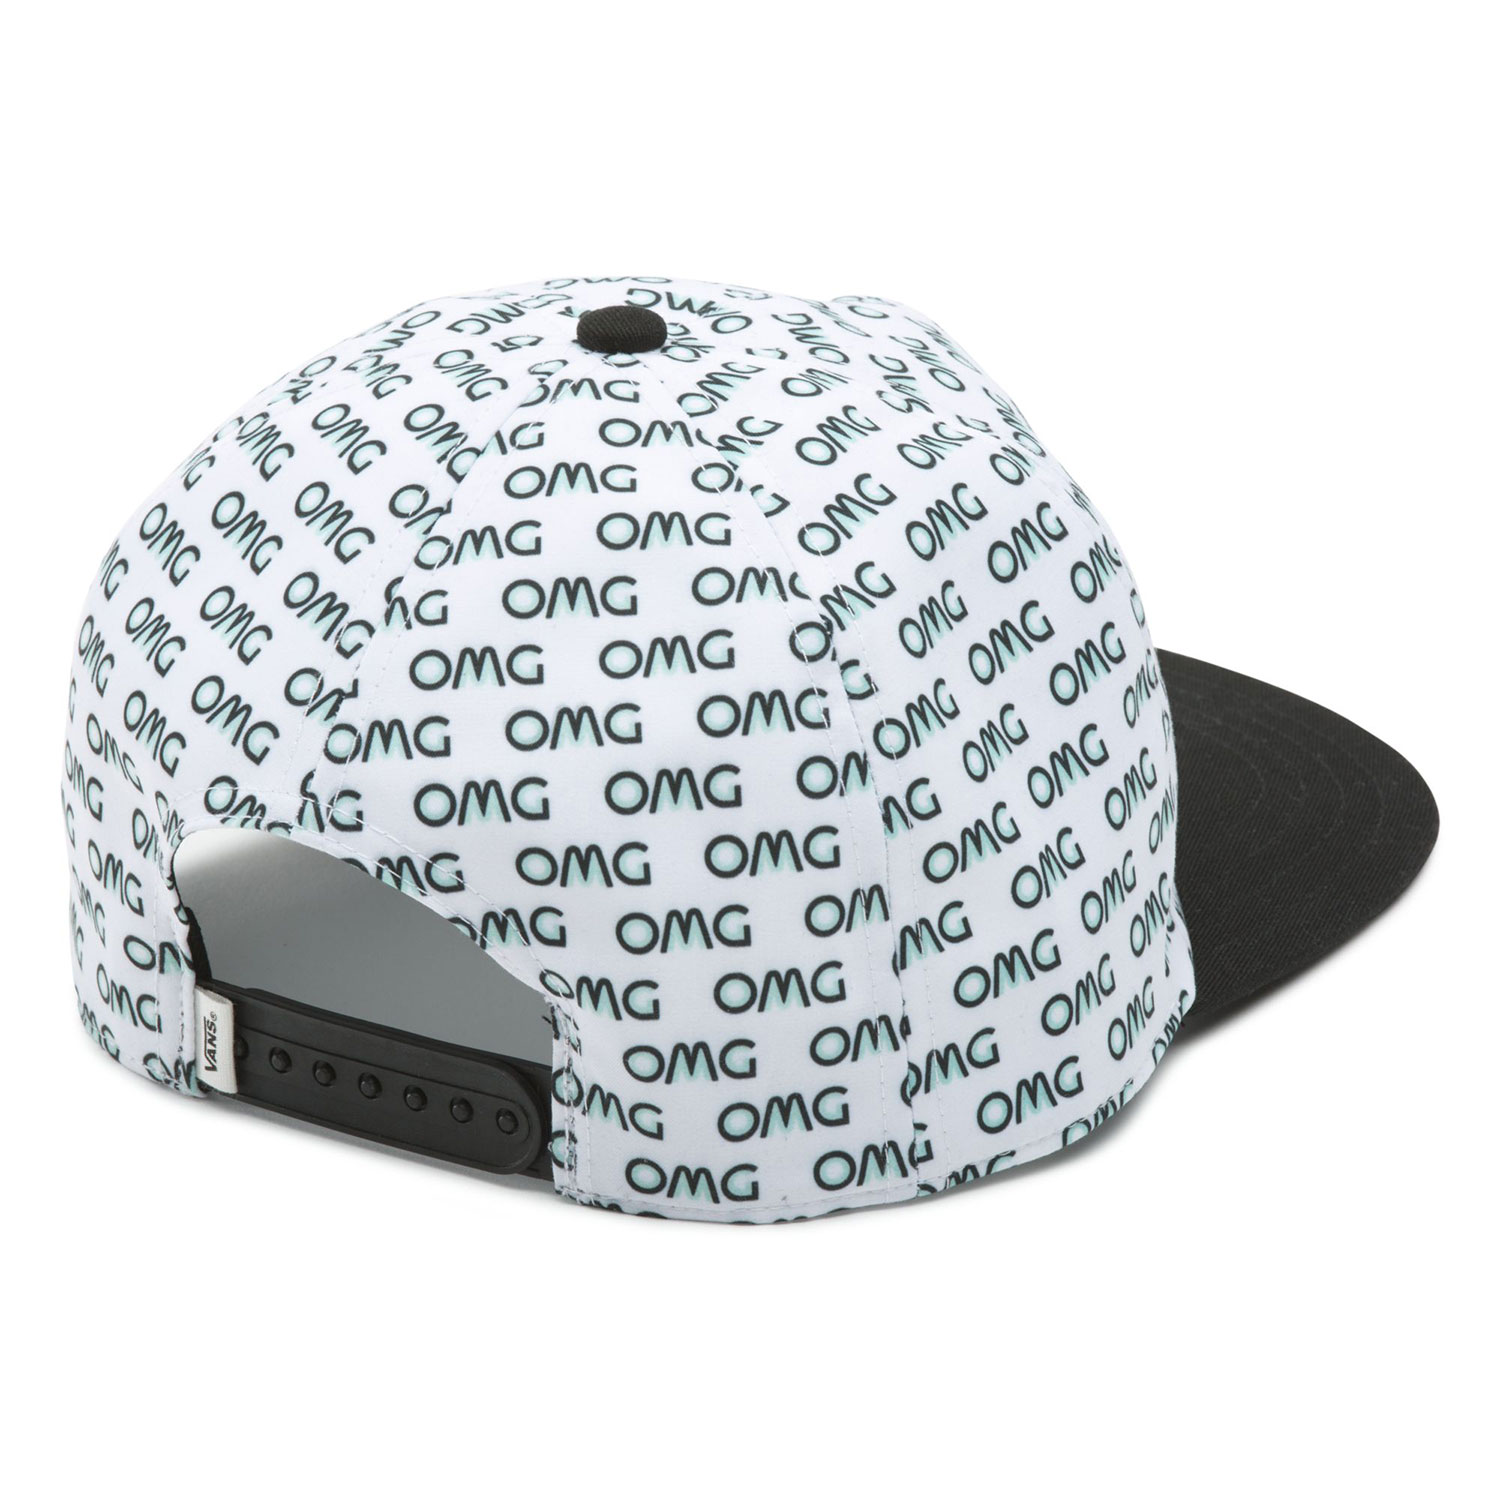 Vans OMG-WTF Snapback Hat